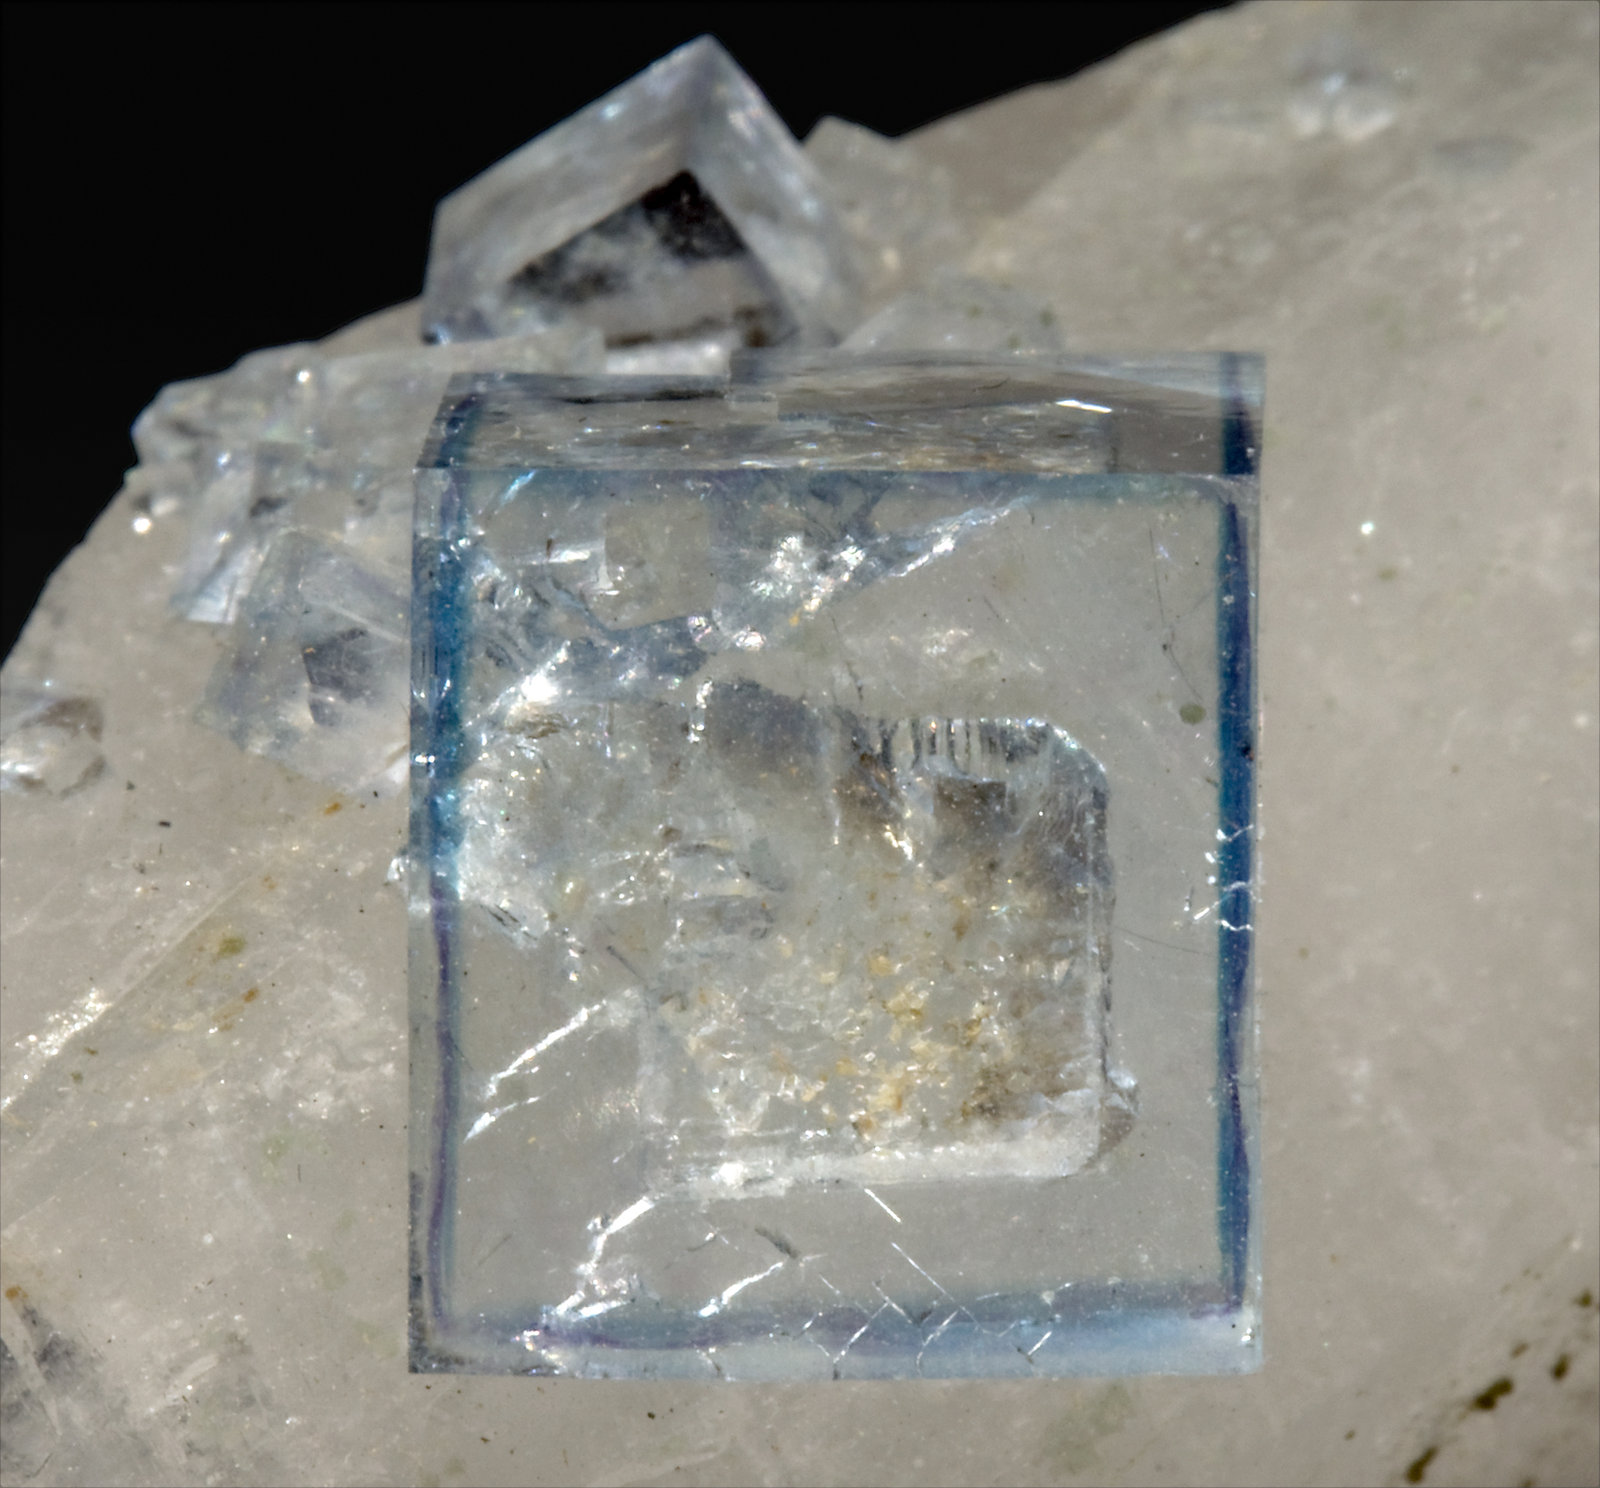 specimens/s_imagesR9/Fluorite-MH36R9d1.jpg